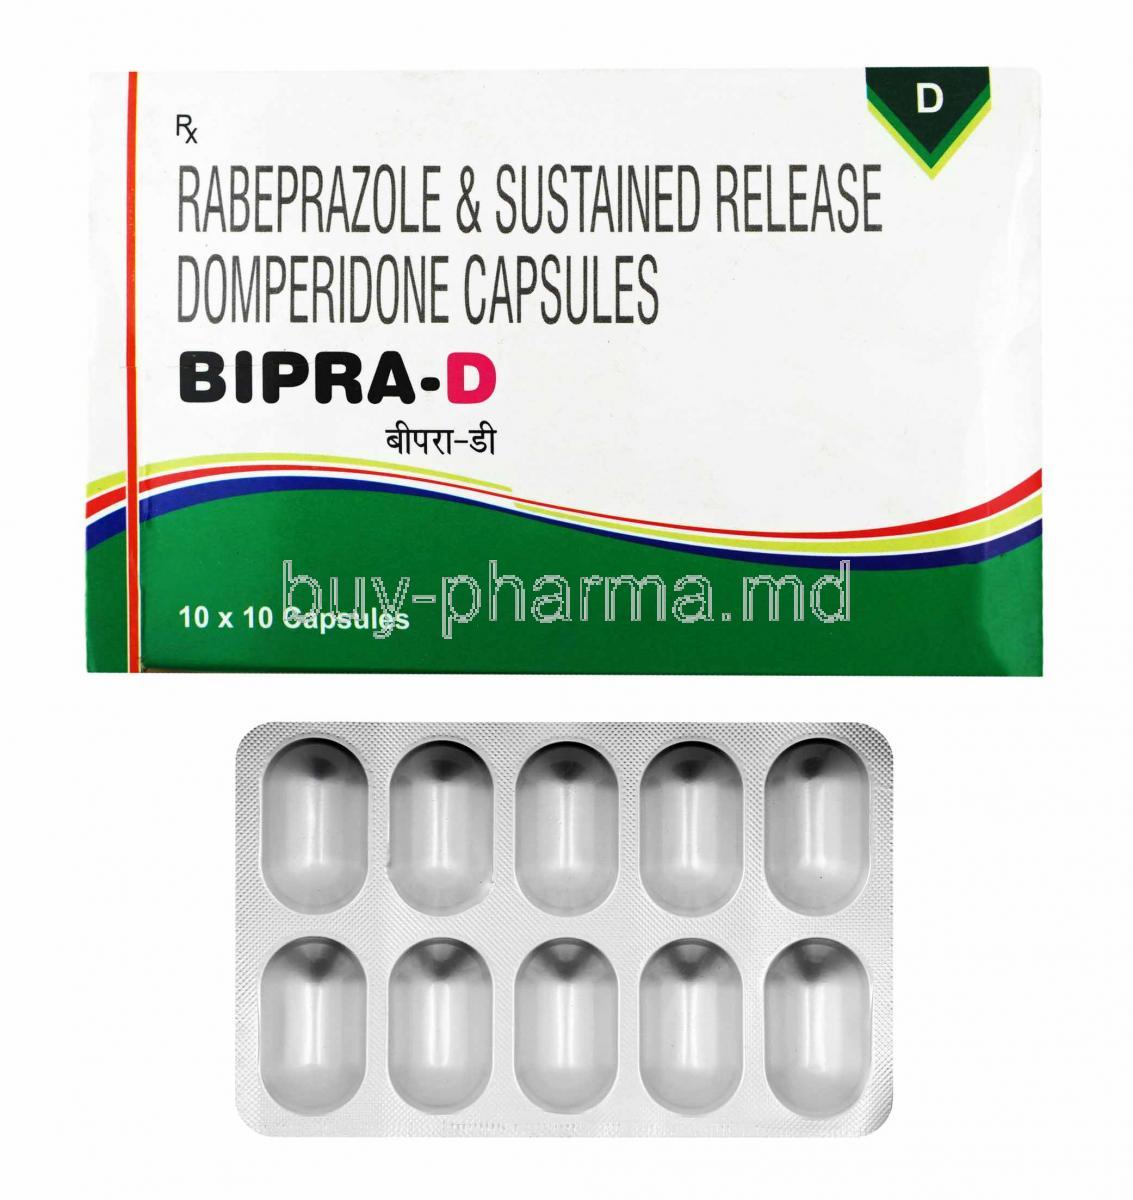 Bipra D, Domperidone and Rabeprazole box and capsules